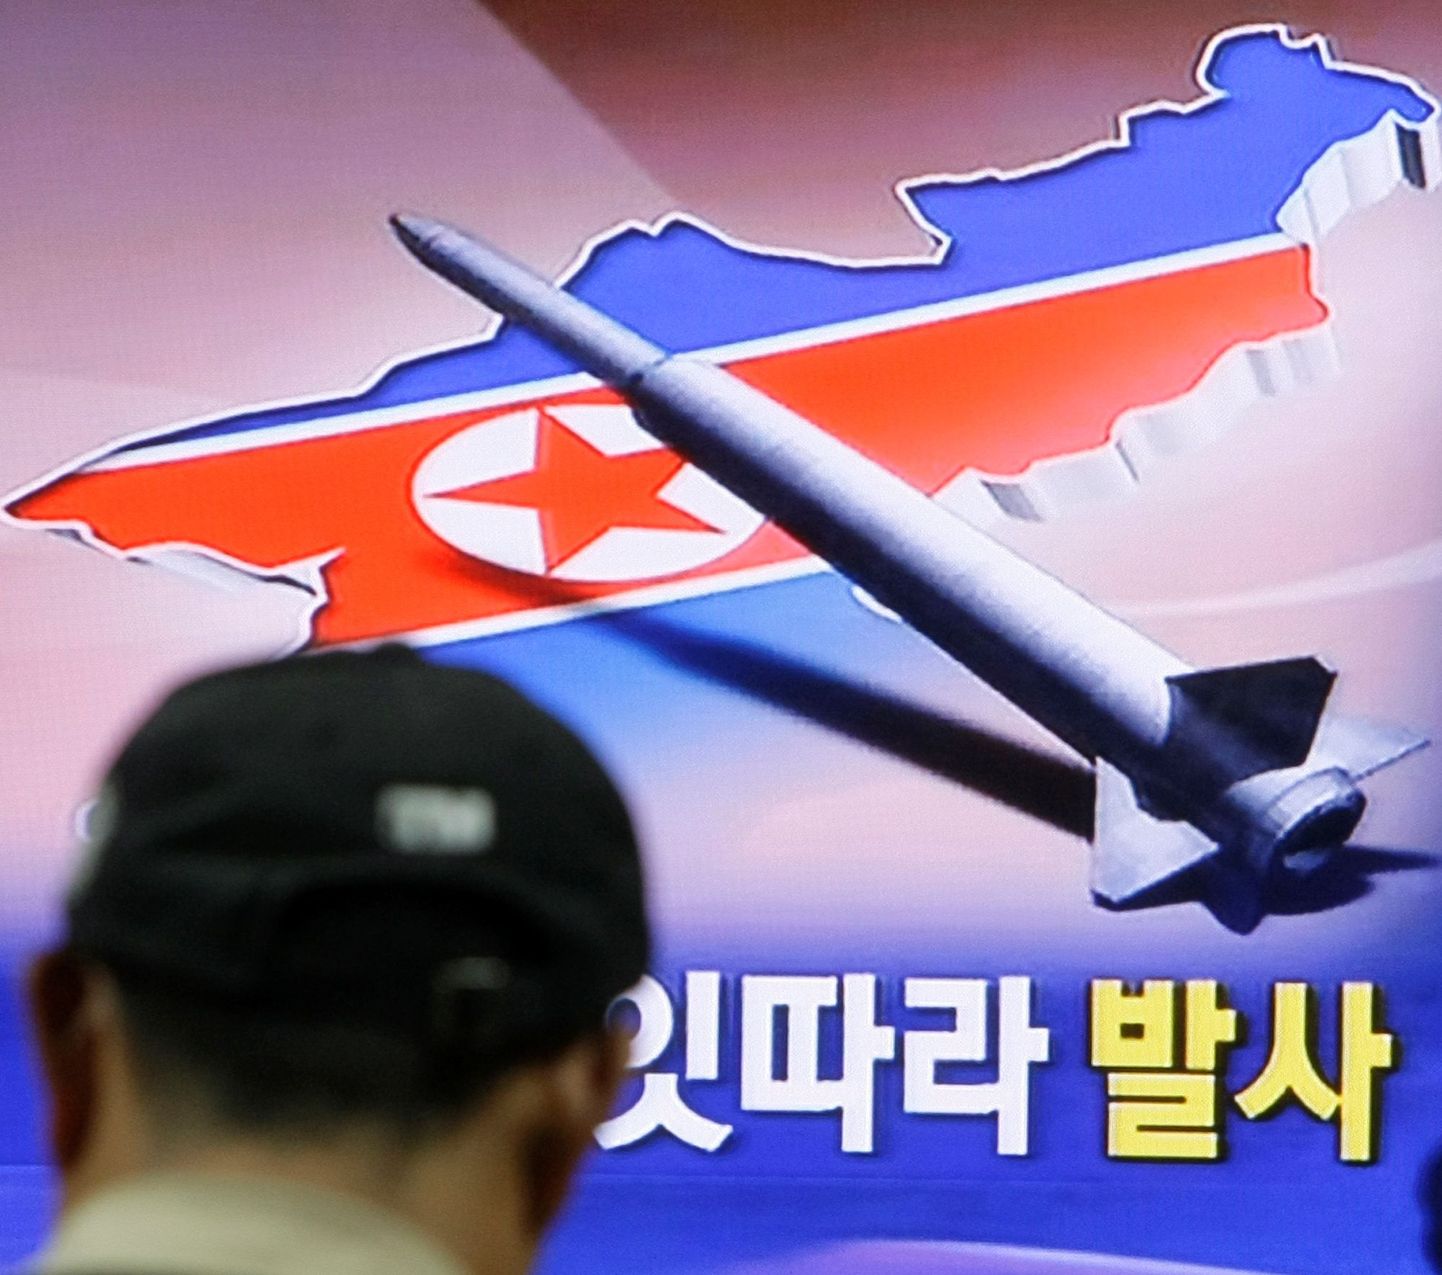 Põhja-Korea ähvardab maailma tuumakatsetustega tuumakatsetuse.